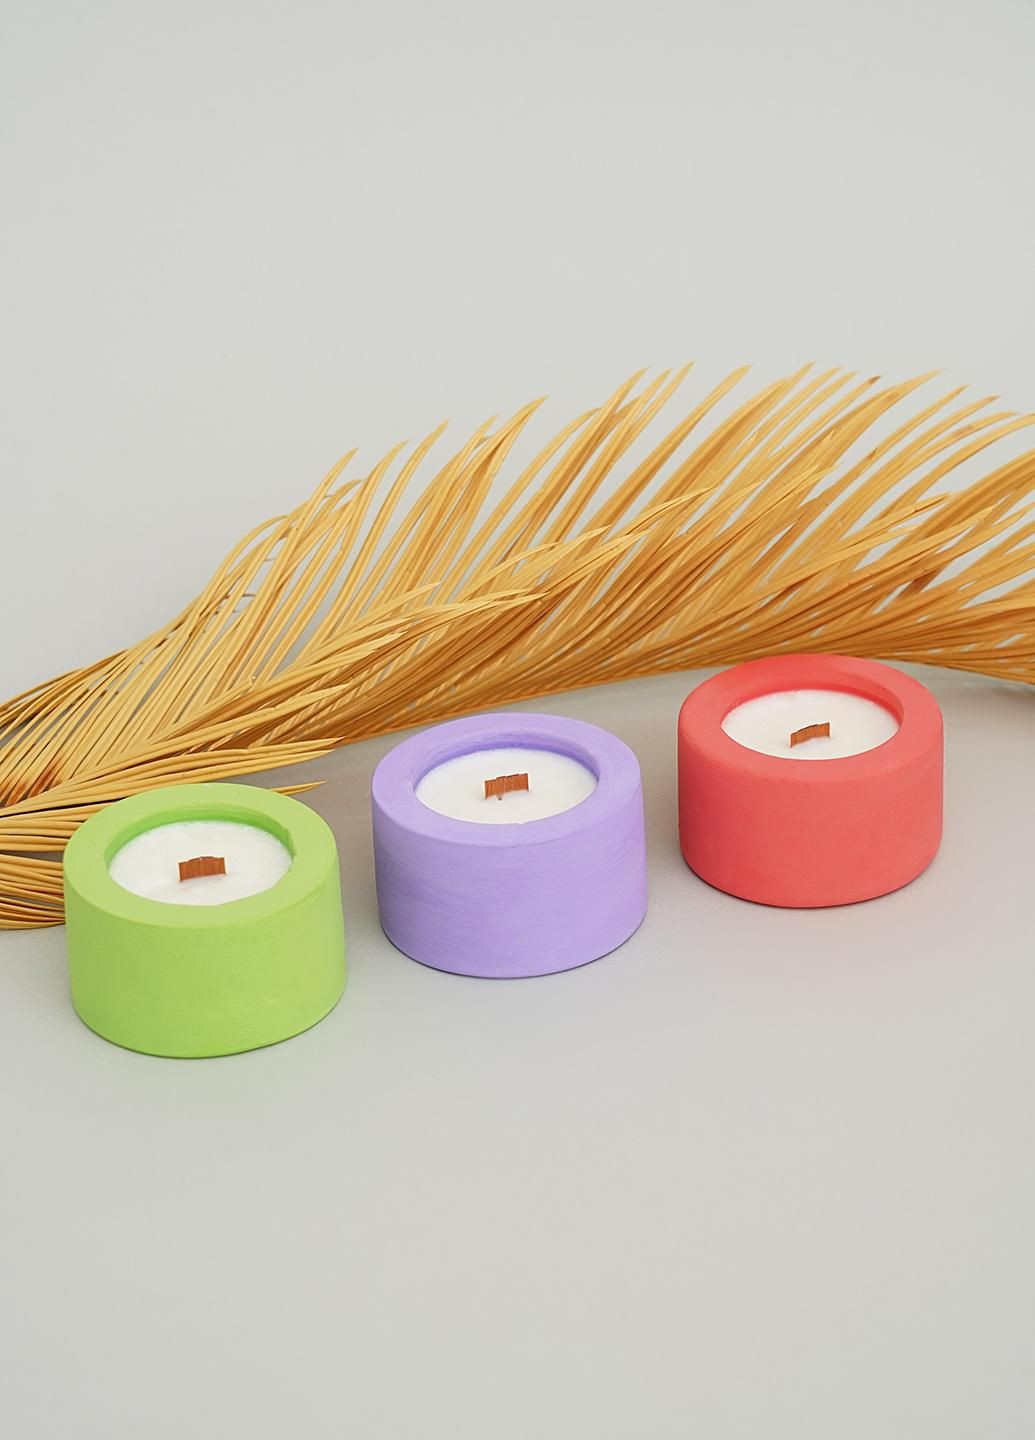 Подарунковий набір ЕКО свічок, аромат Єгипетський (парфумована композиція) Svich Shop 3 (282720106)